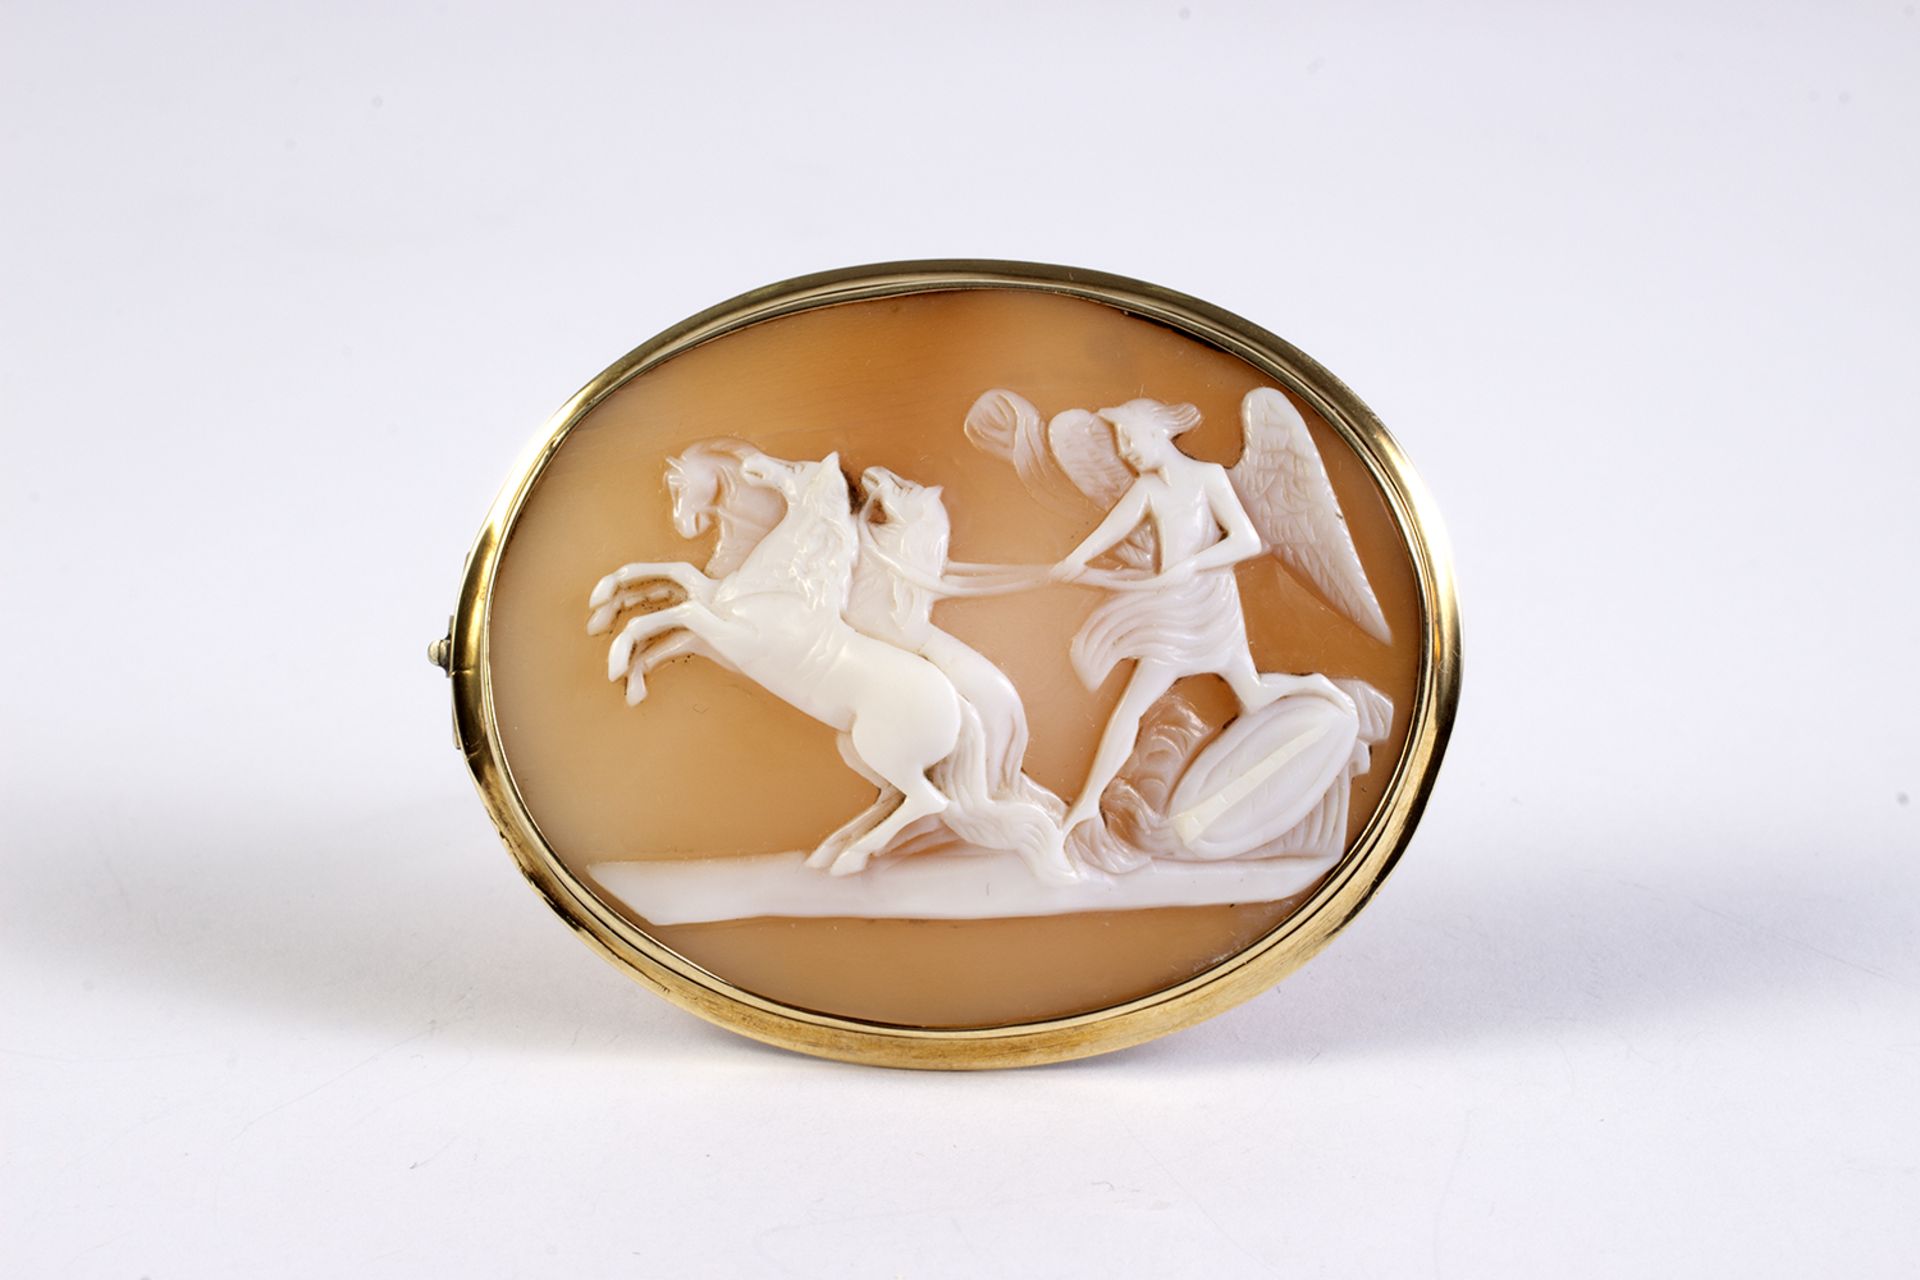 Broche camafeo en oro con representación de Cupido con caballos.